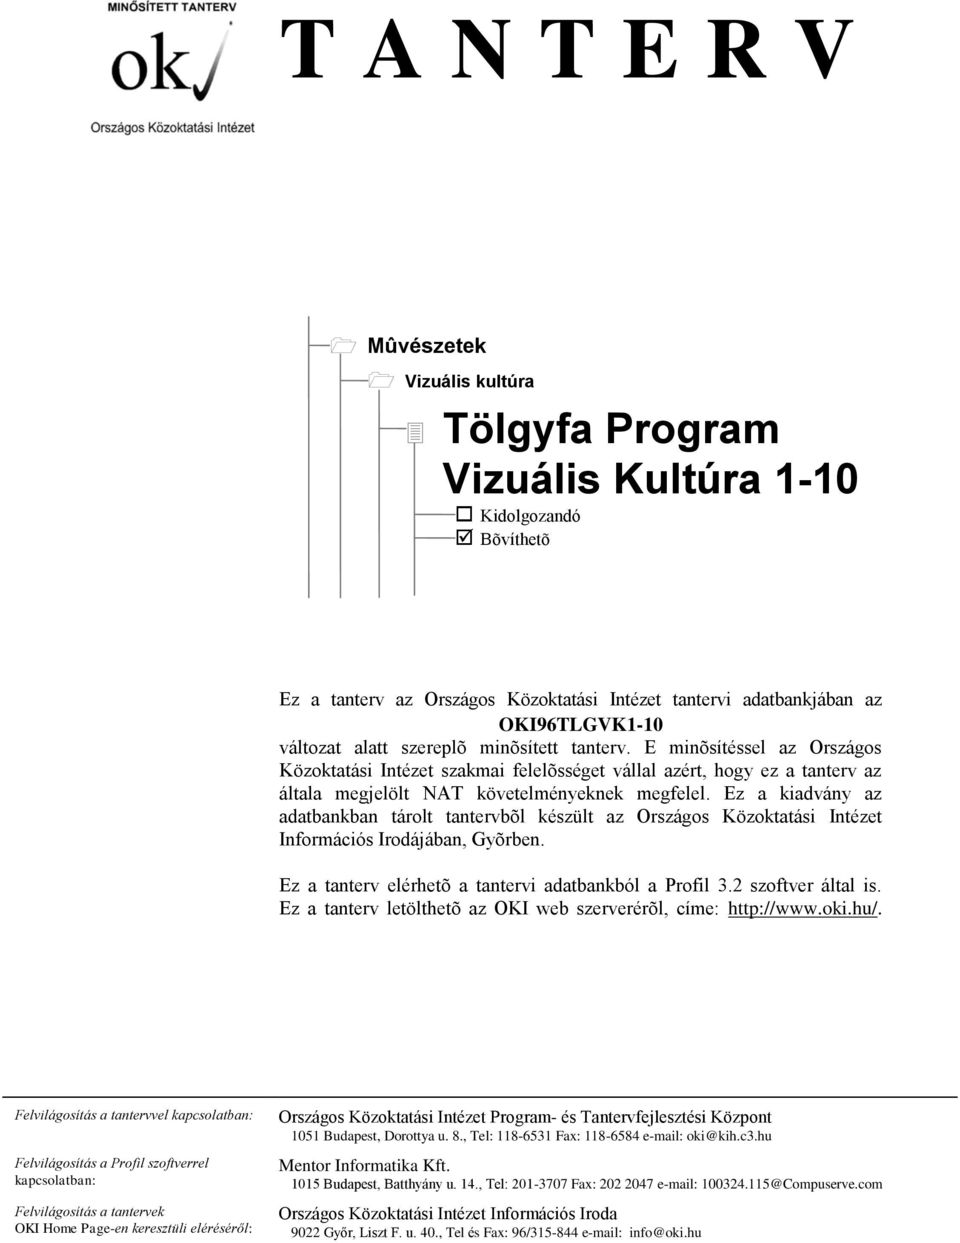 Ez a kiadvány az adatbankban tárolt tantervbõl készült az Országos Közoktatási Intézet Információs Irodájában, Gyõrben. Ez a tanterv elérhetõ a tantervi adatbankból a Profil 3.2 szoftver által is.